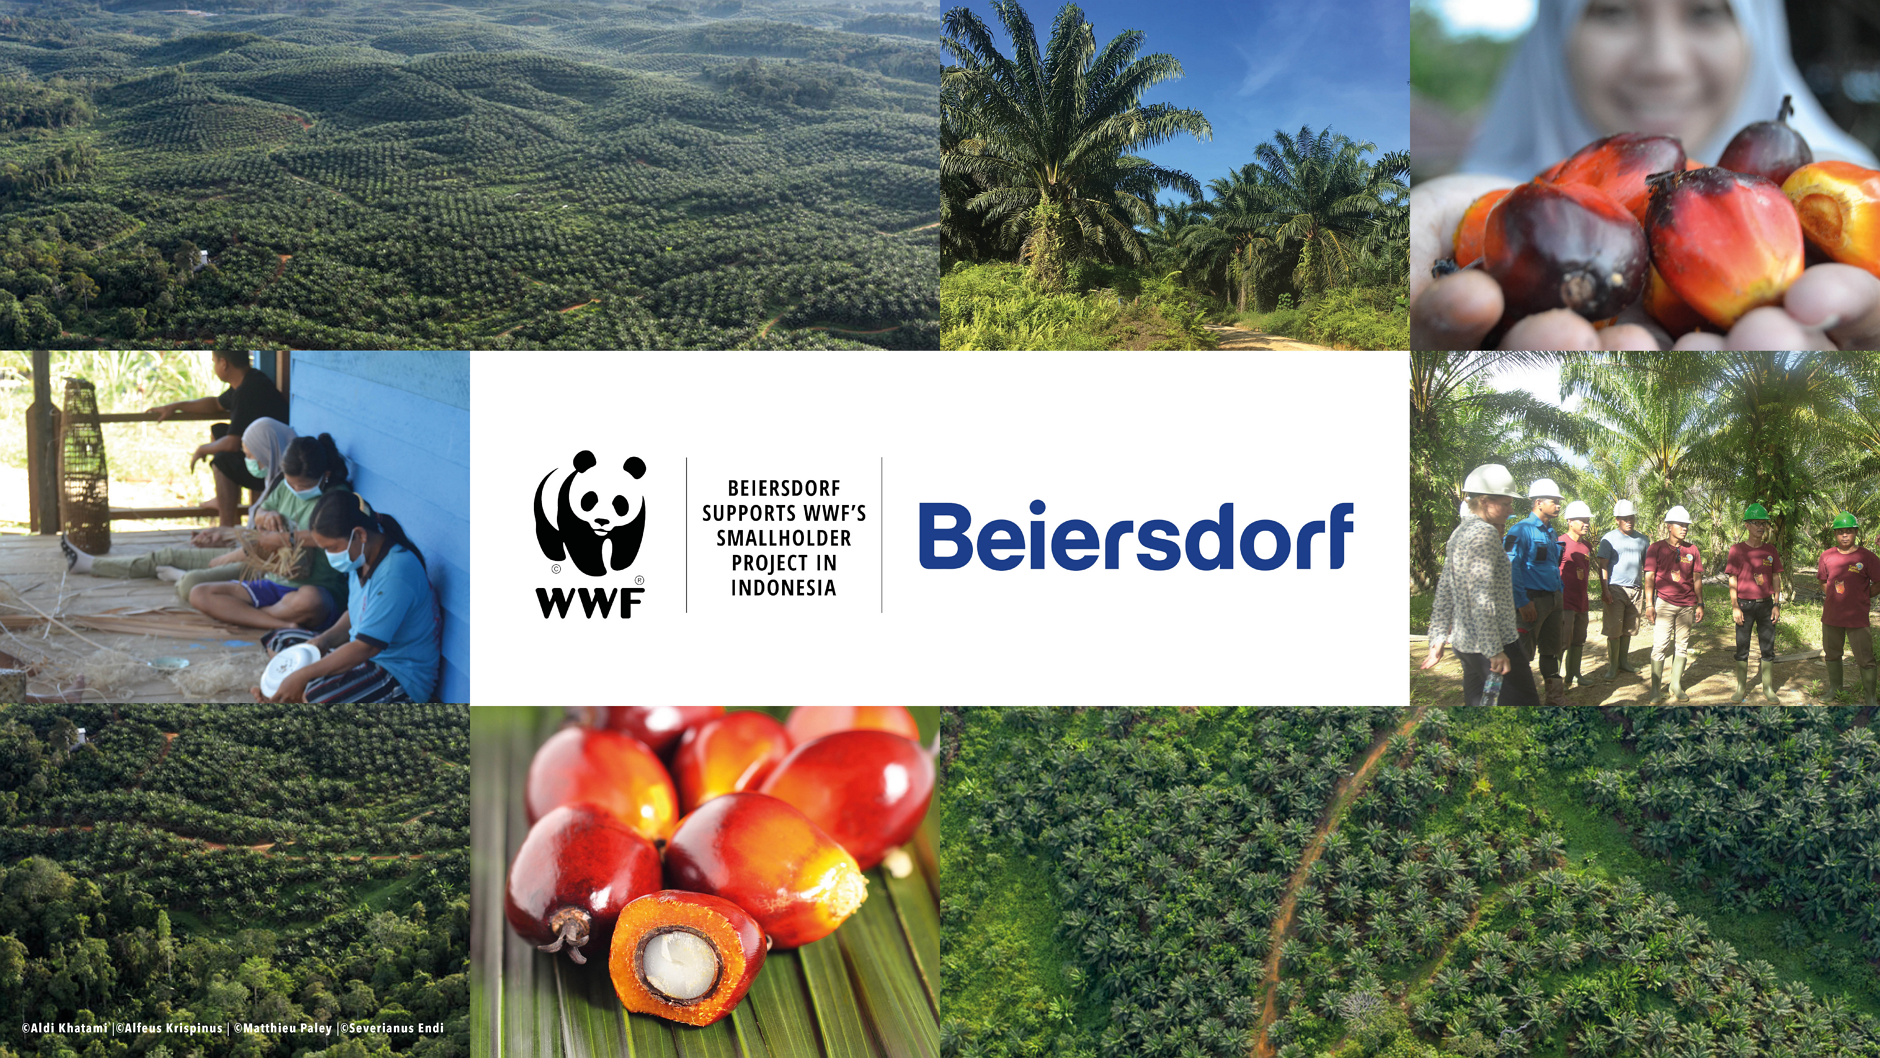 WWF dan Beiersdorf memperpanjang kerjasama untuk produksi minyak sawit yang lebih berkelanjutan di Indonesia hingga 2026